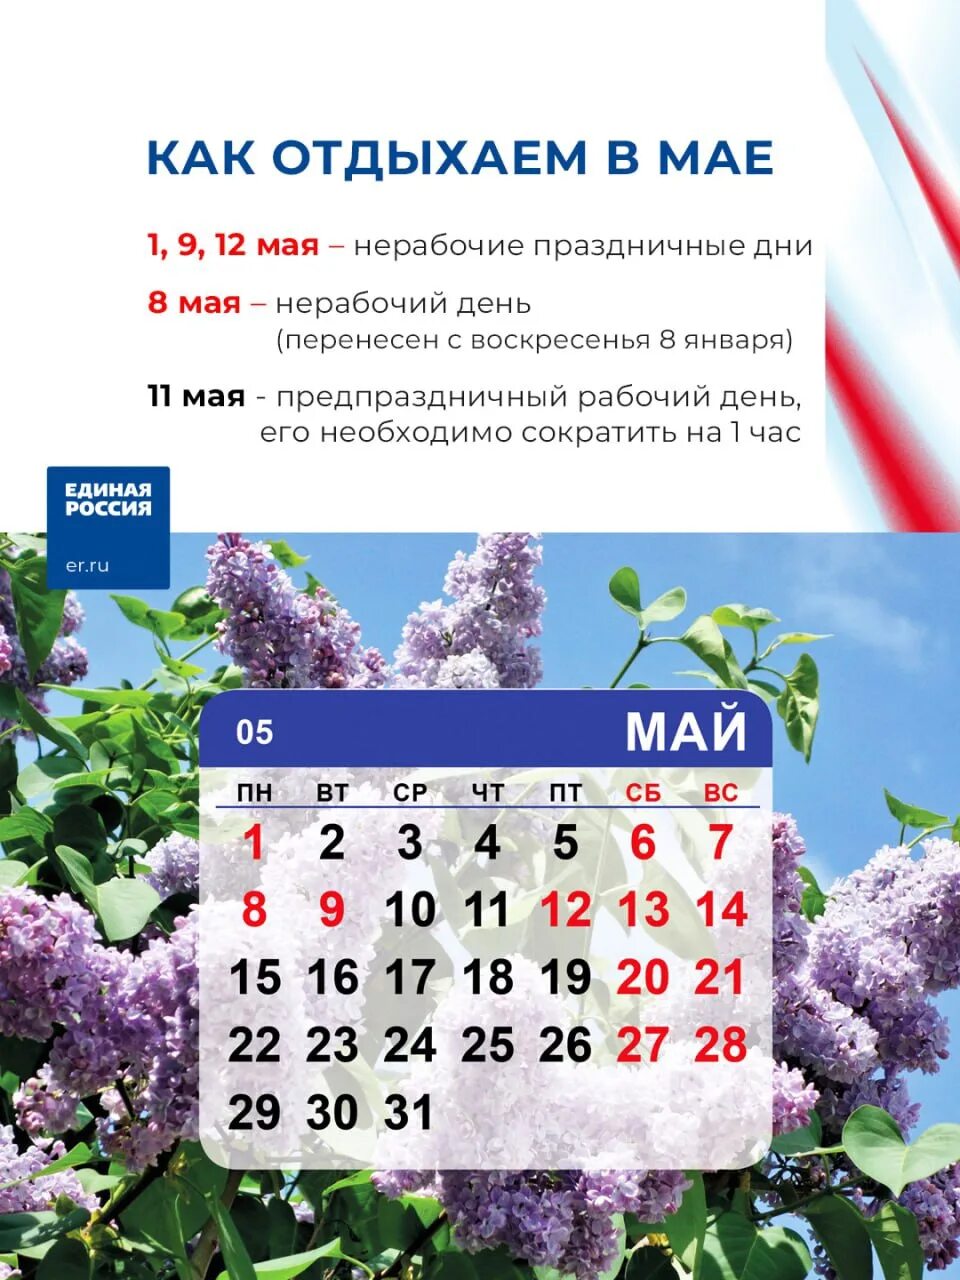 Праздники в мае. Выходные на майские праздники. Праздники в мае календарь. Рабочие и праздничные дни майские.